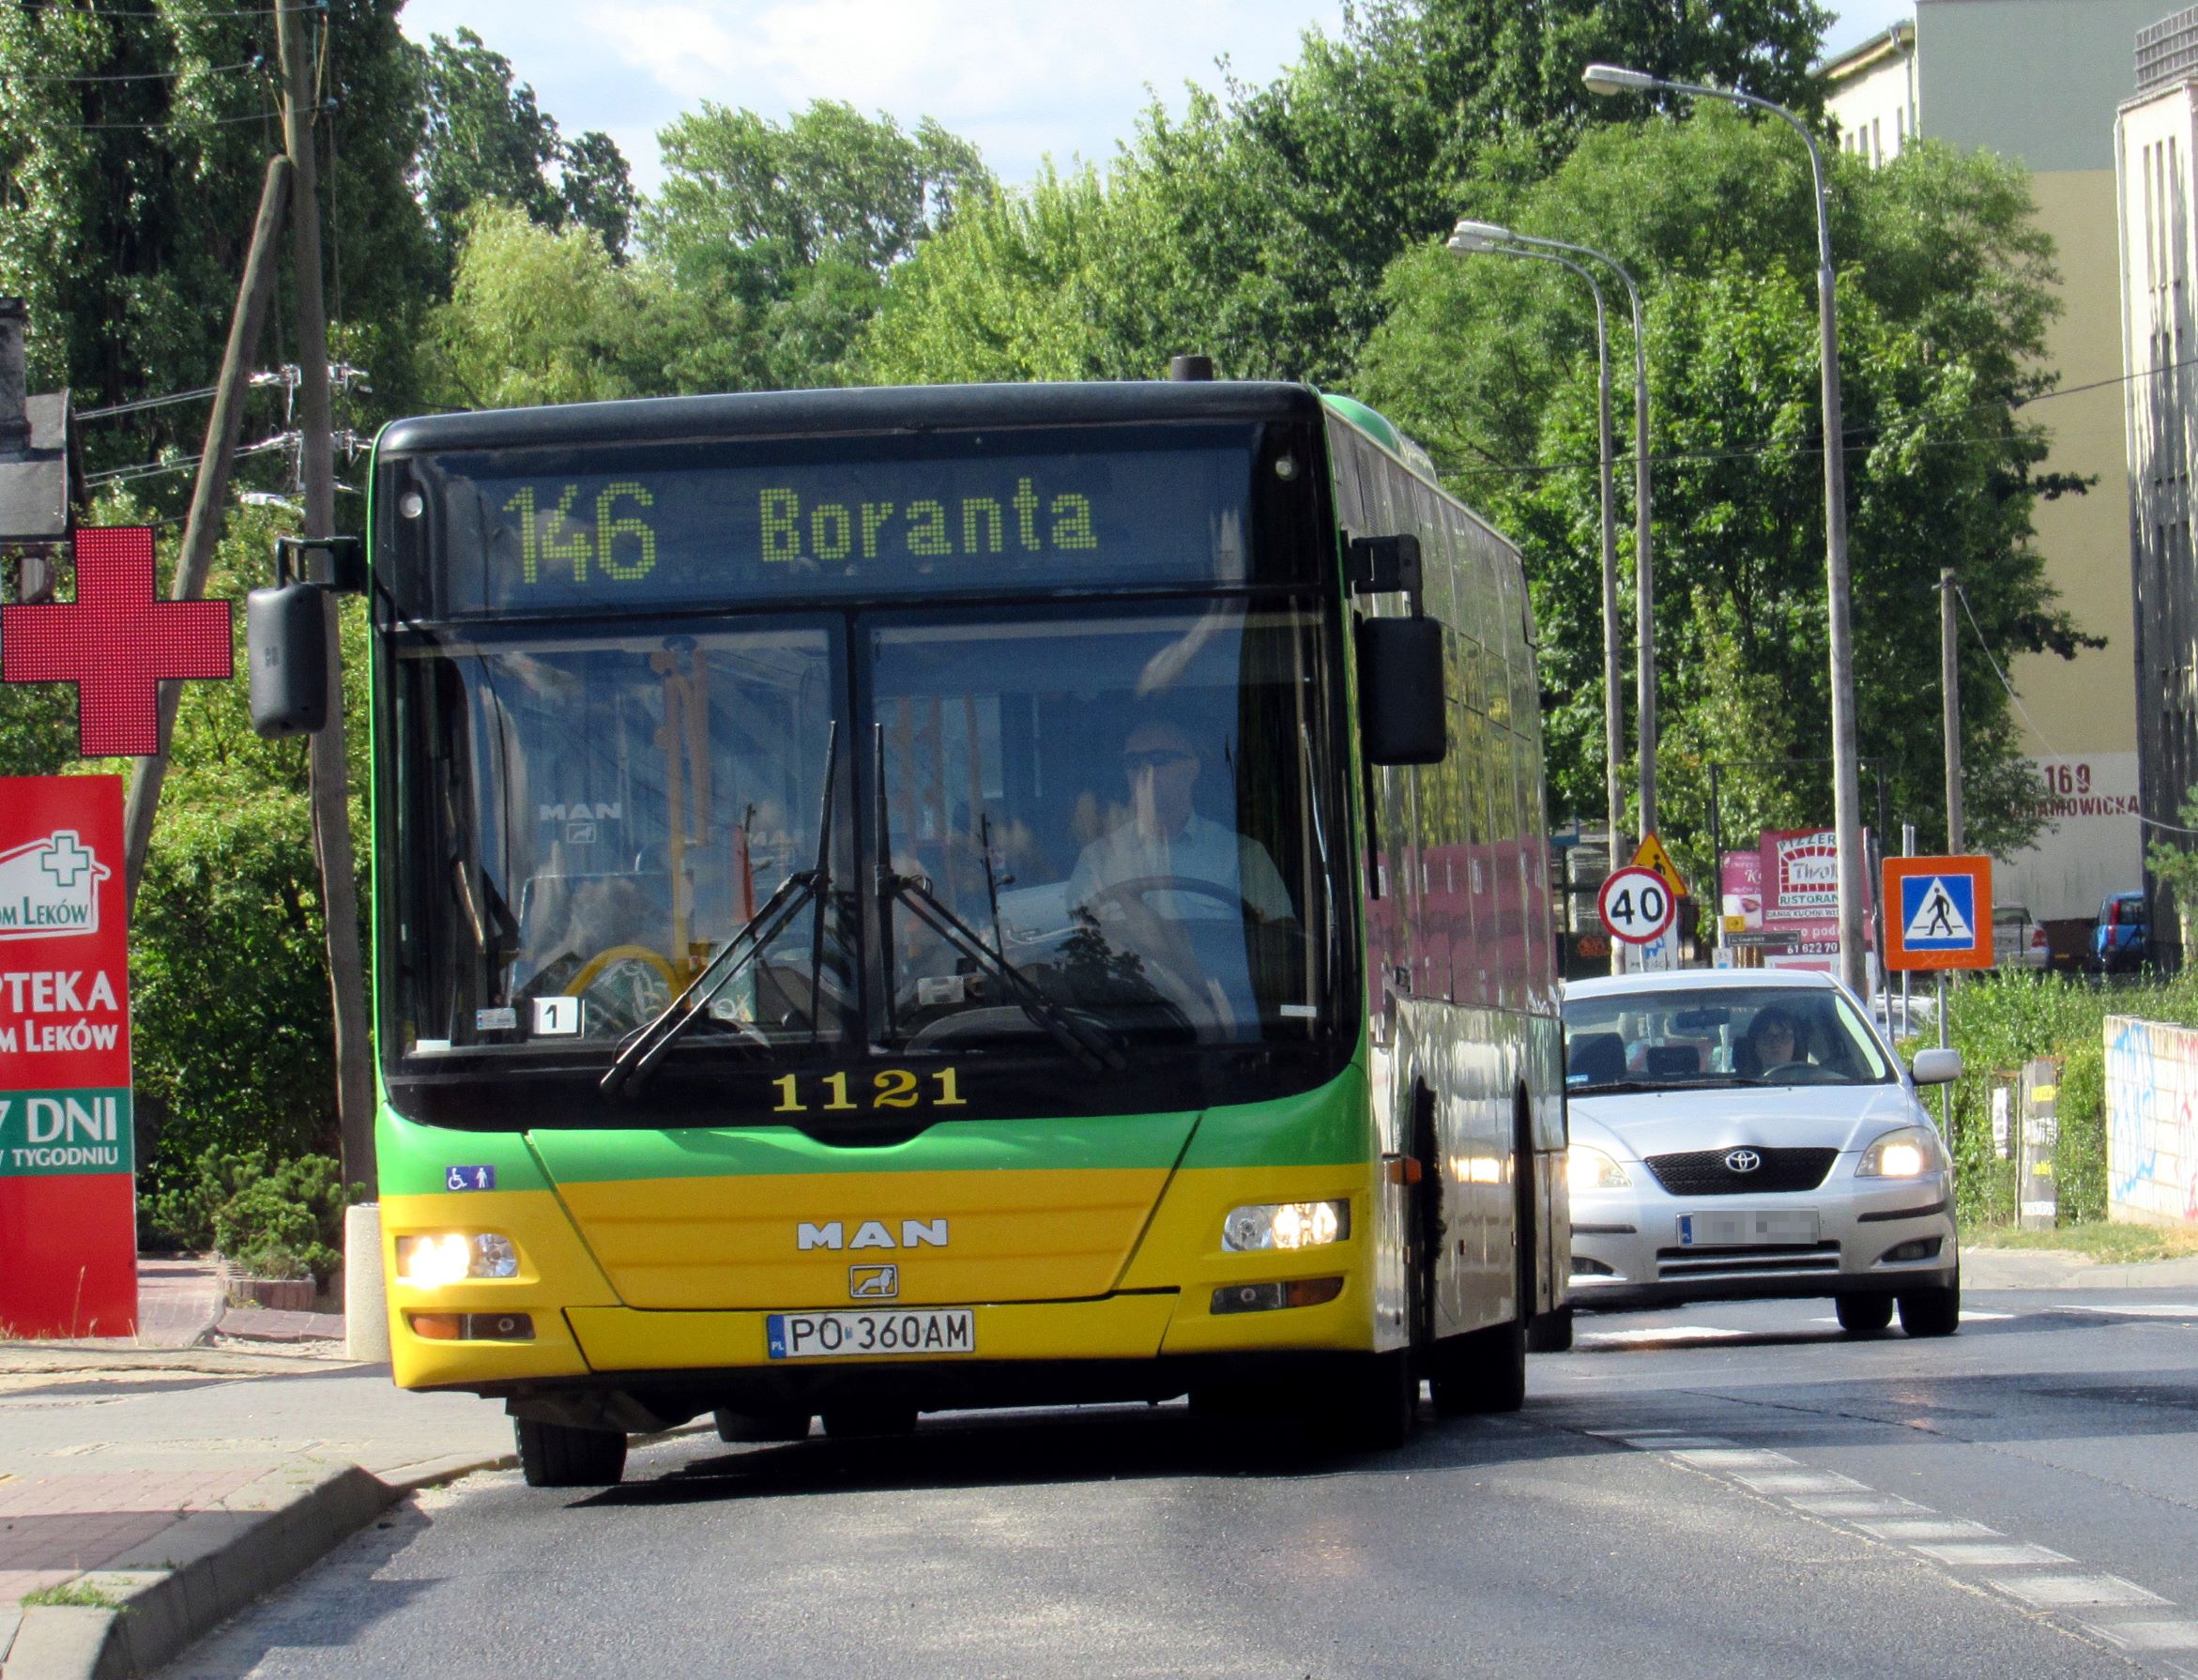 Linia nr 146 i 178 - zmiana lokalizacji przystanków Łęgowskiego od 20 czerwca (czwartek)